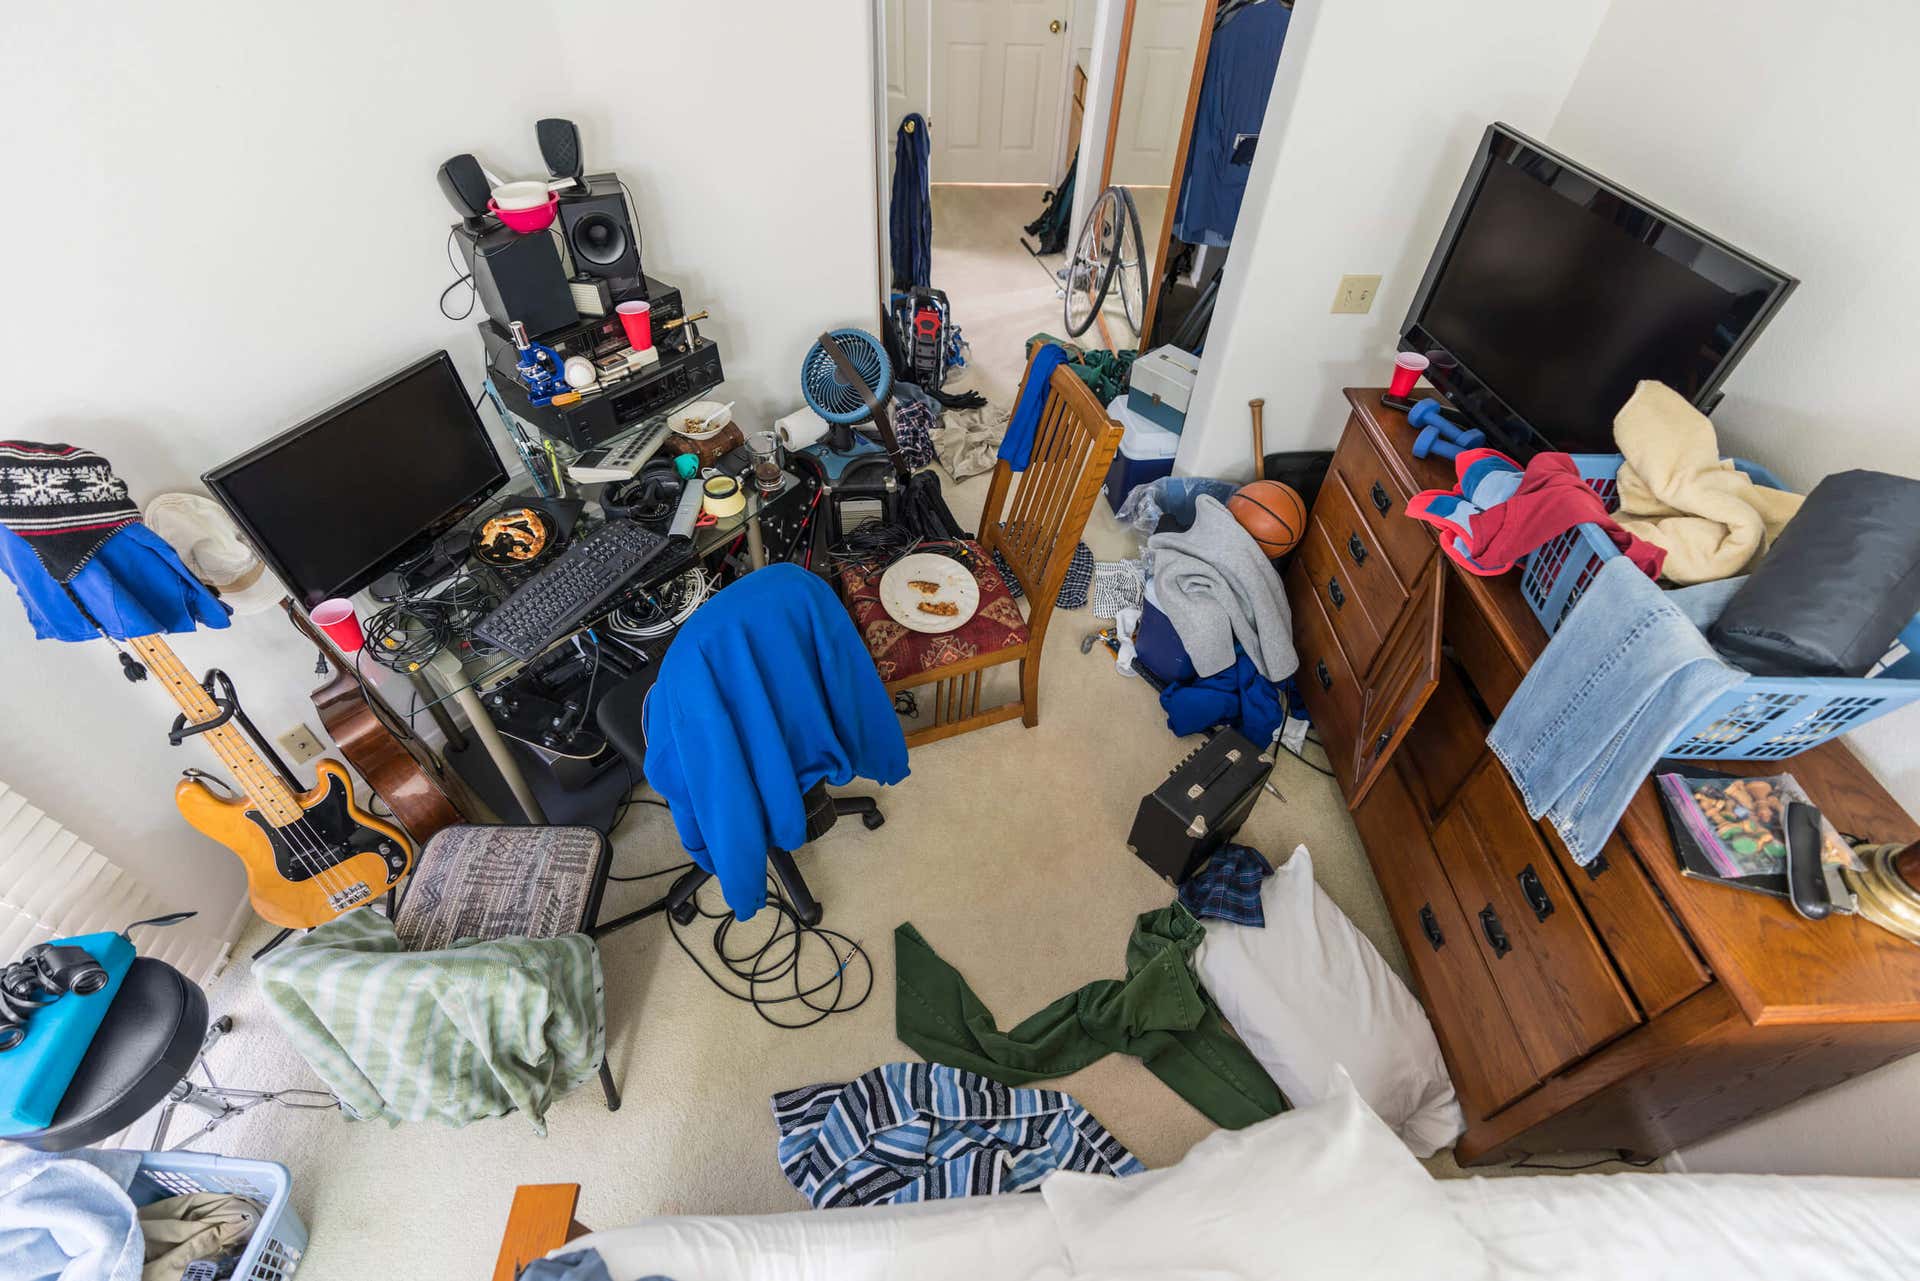 A disorganized multiuse room